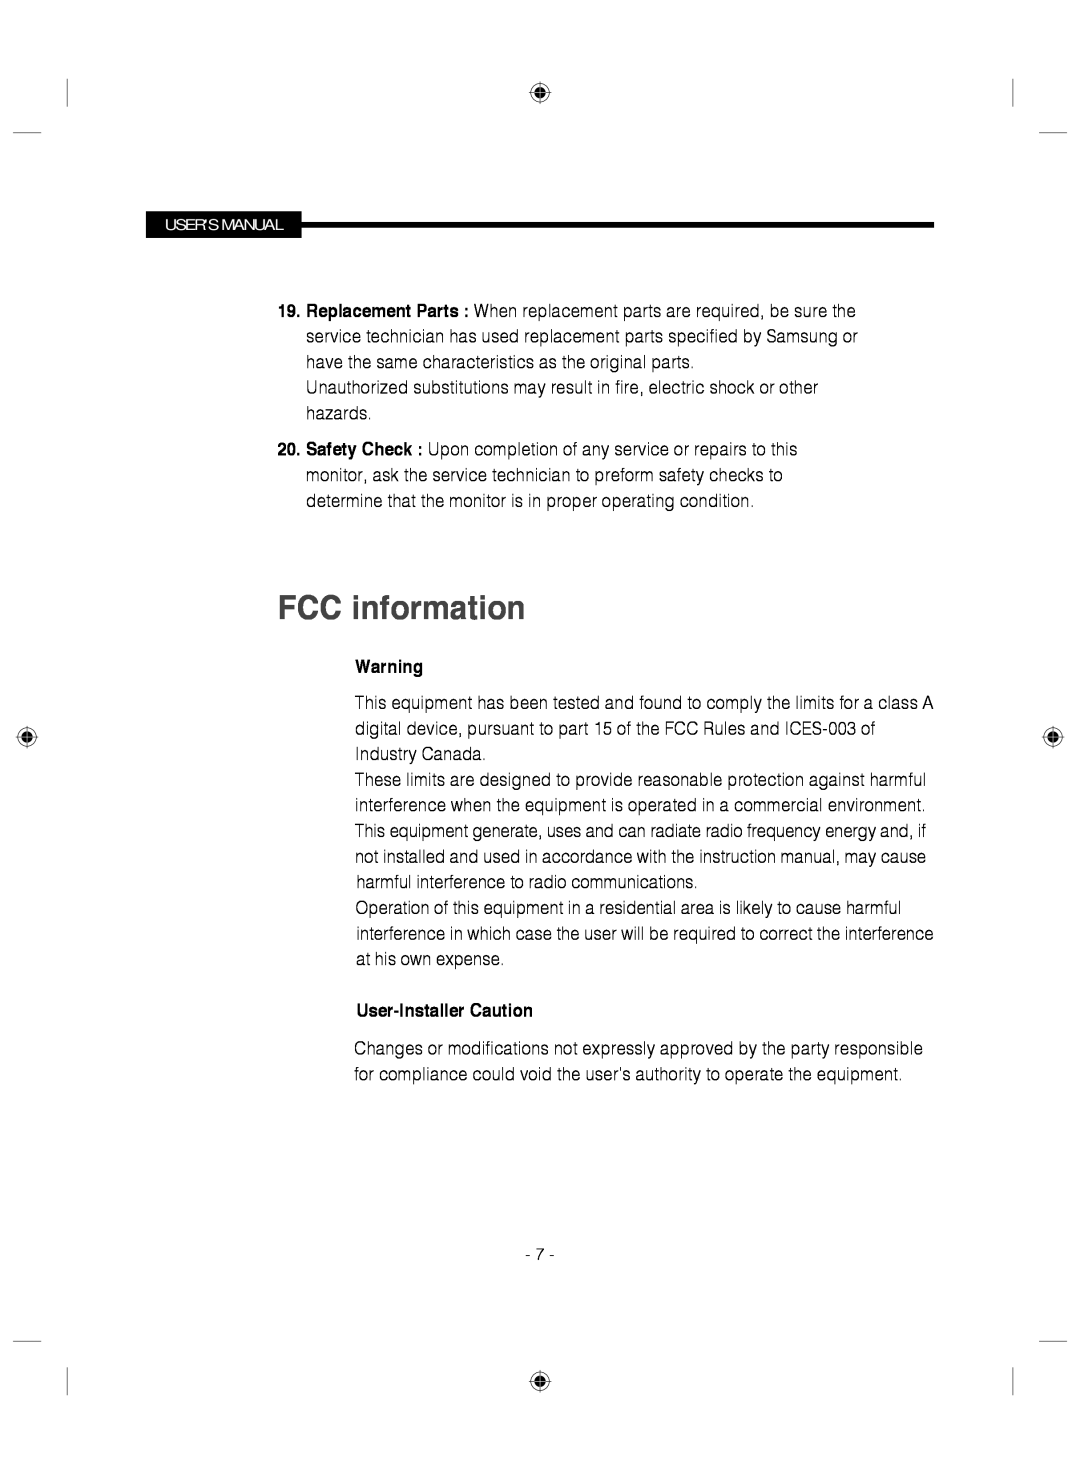 Samsung SMC-145 manual FCC information, User-Installer Caution 